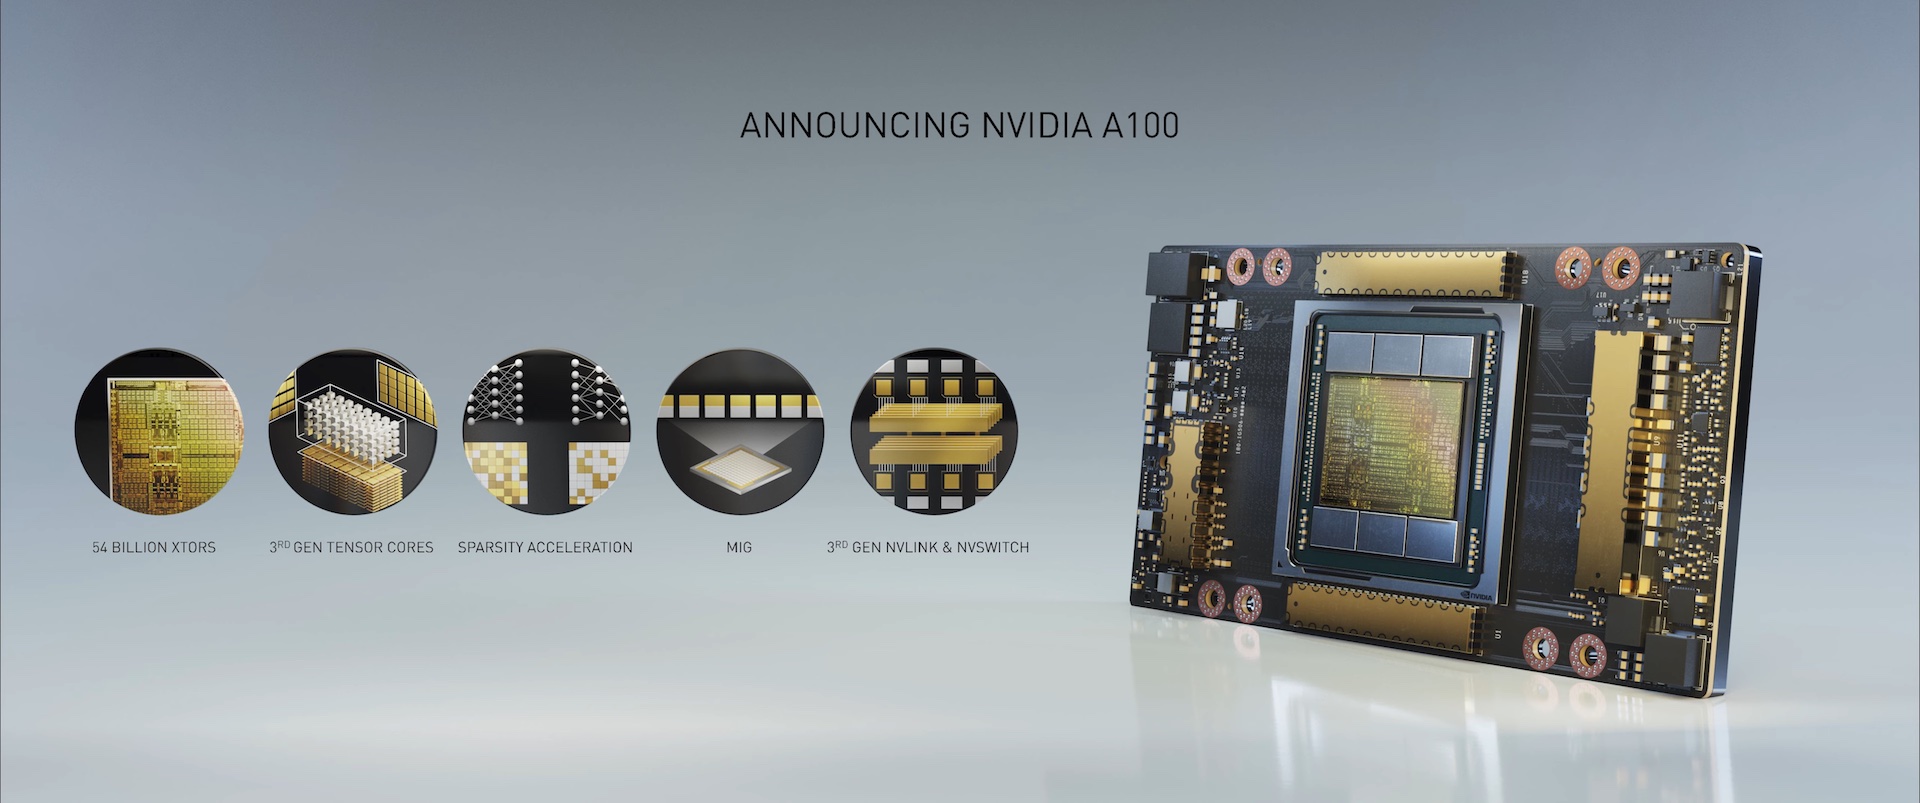 فخر المعالجات الرسومية: A100 من NVIDIA يسحق جميع أشكال المنافسة!